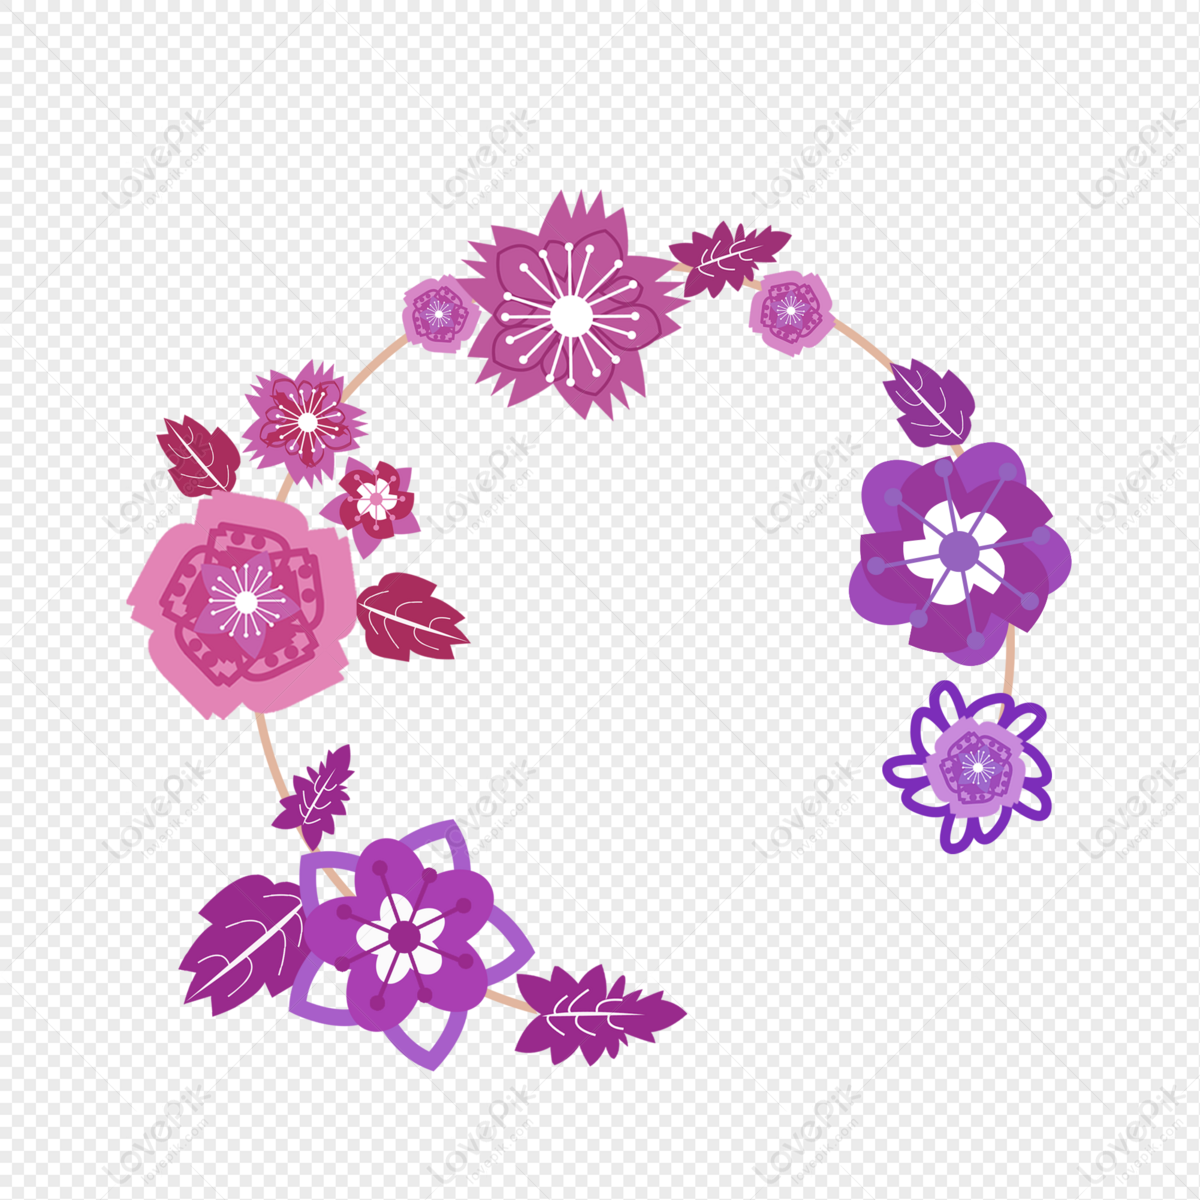 Khung hoa vẽ tay: Khung hoa vẽ tay sẽ khiến cho không gian sống của bạn trở nên thật đặc biệt và ấn tượng hơn. Hãy khám phá các khung hoa vẽ tay đẹp mắt và đầy sáng tạo trên trang web của chúng tôi ngay hôm nay.